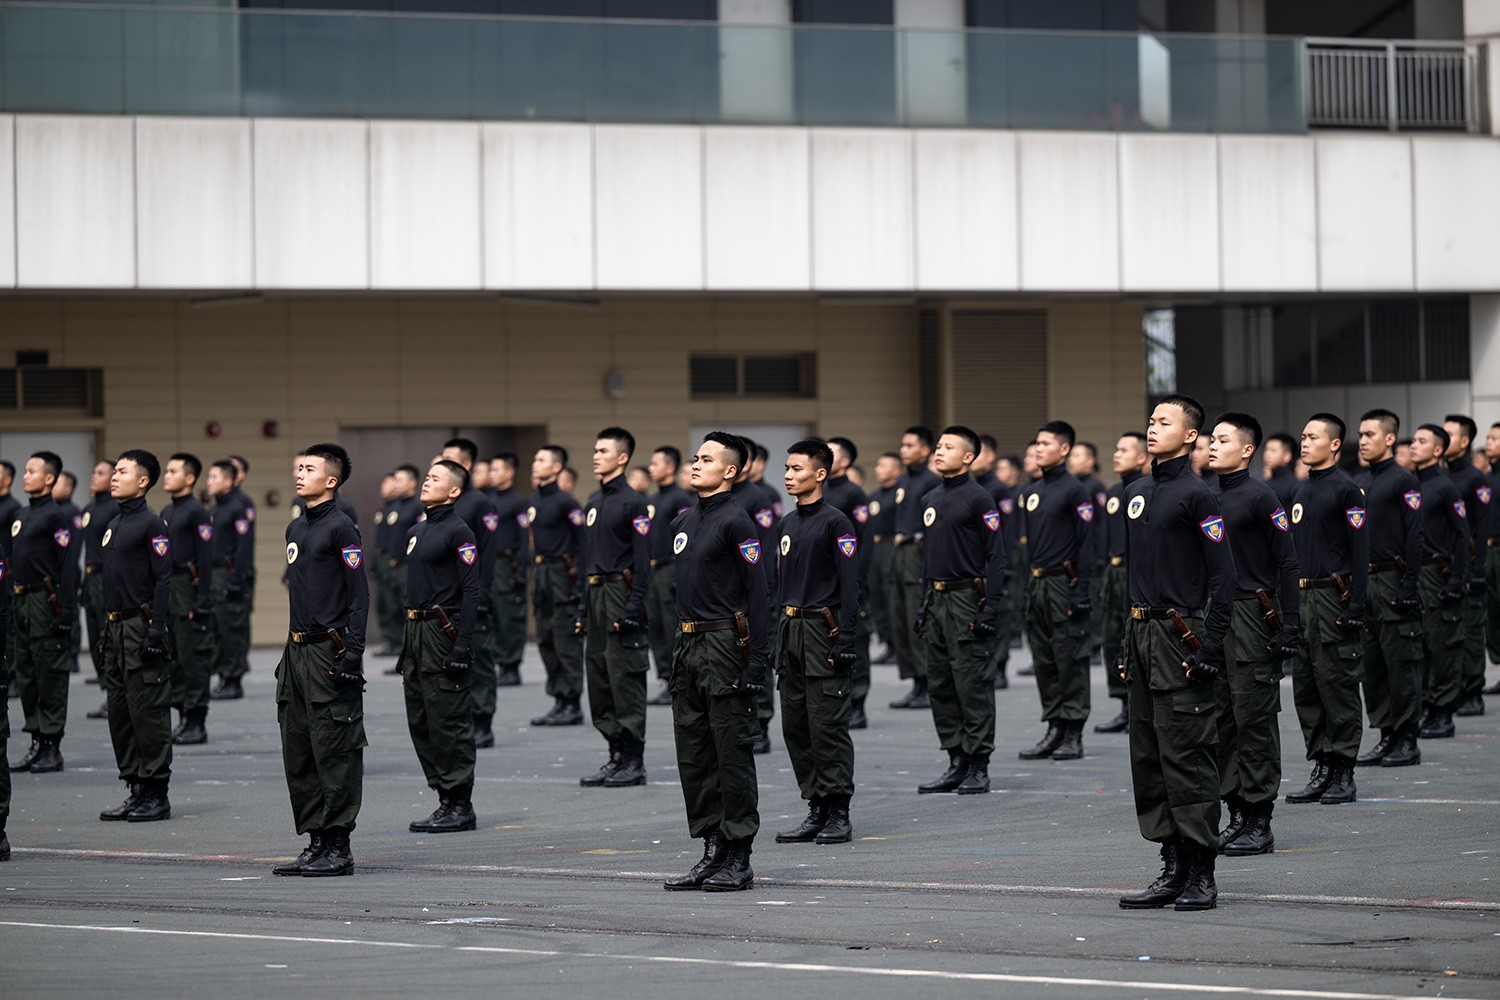 Trong buổi lễ kỷ niệm 50 năm ngày truyền thống lực lượng cảnh sát cơ động (15/4/1974 - 15/4/2024), nhiều người trầm trồ thán phục khi xem các chiến sĩ cảnh sát đặc nhiệm biểu diễn khí công